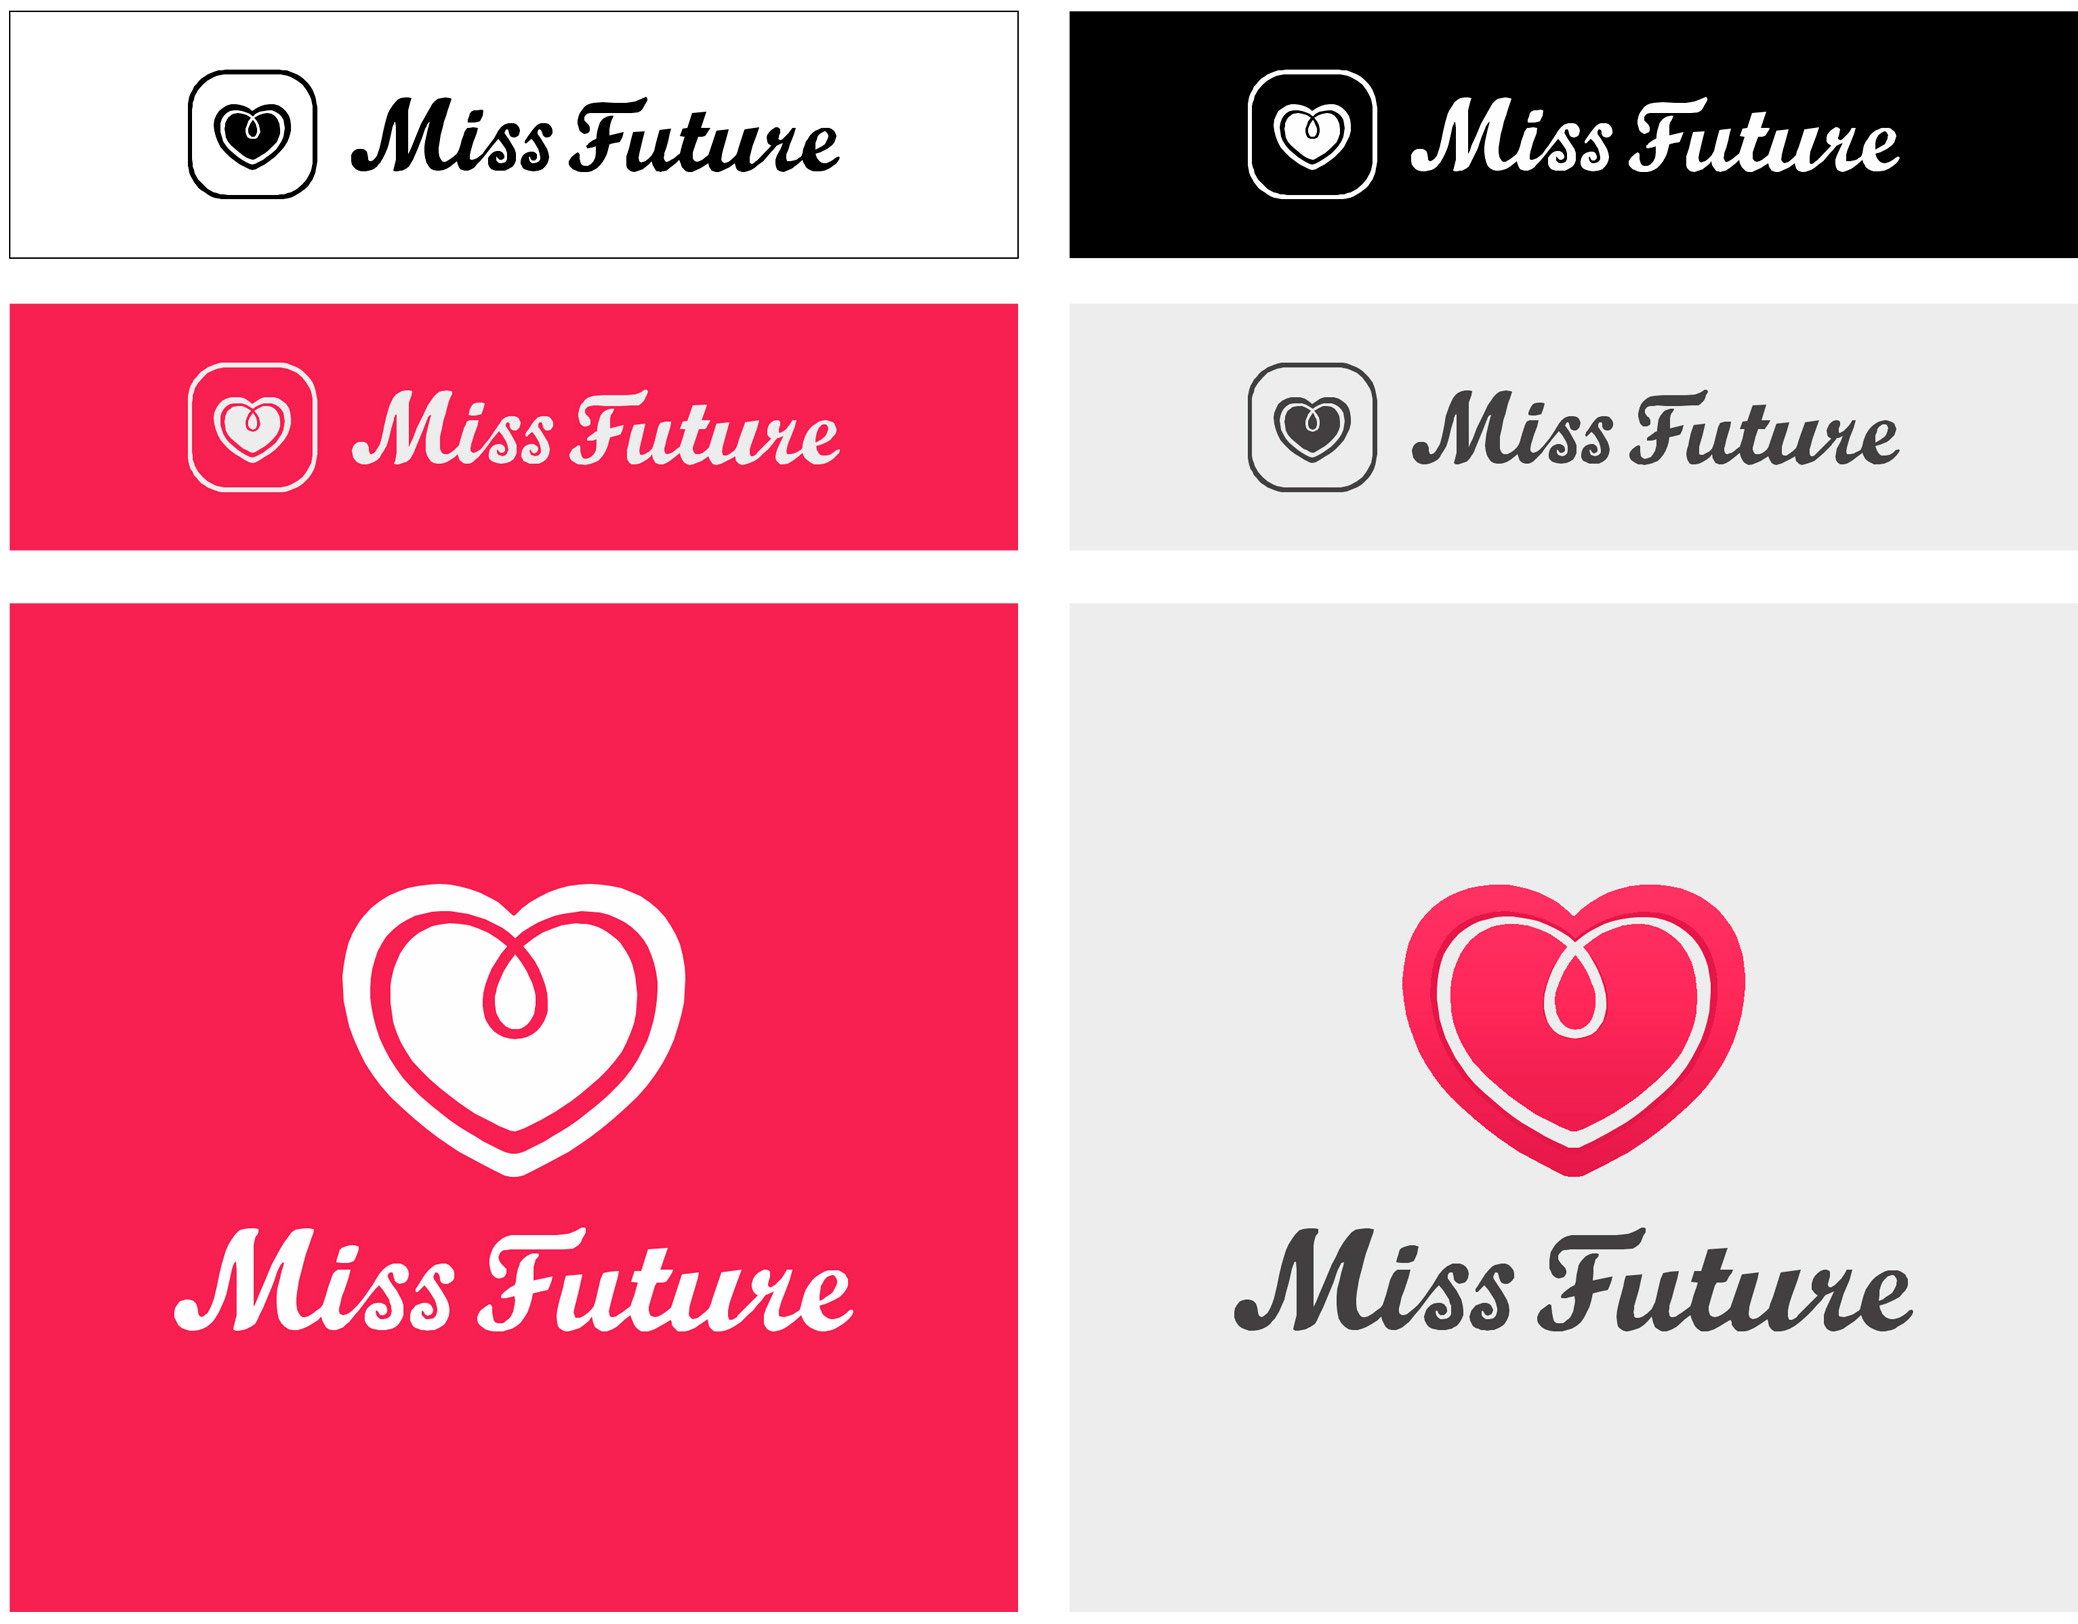 Визуальный ряд конкурса красоты и достижений Miss Future